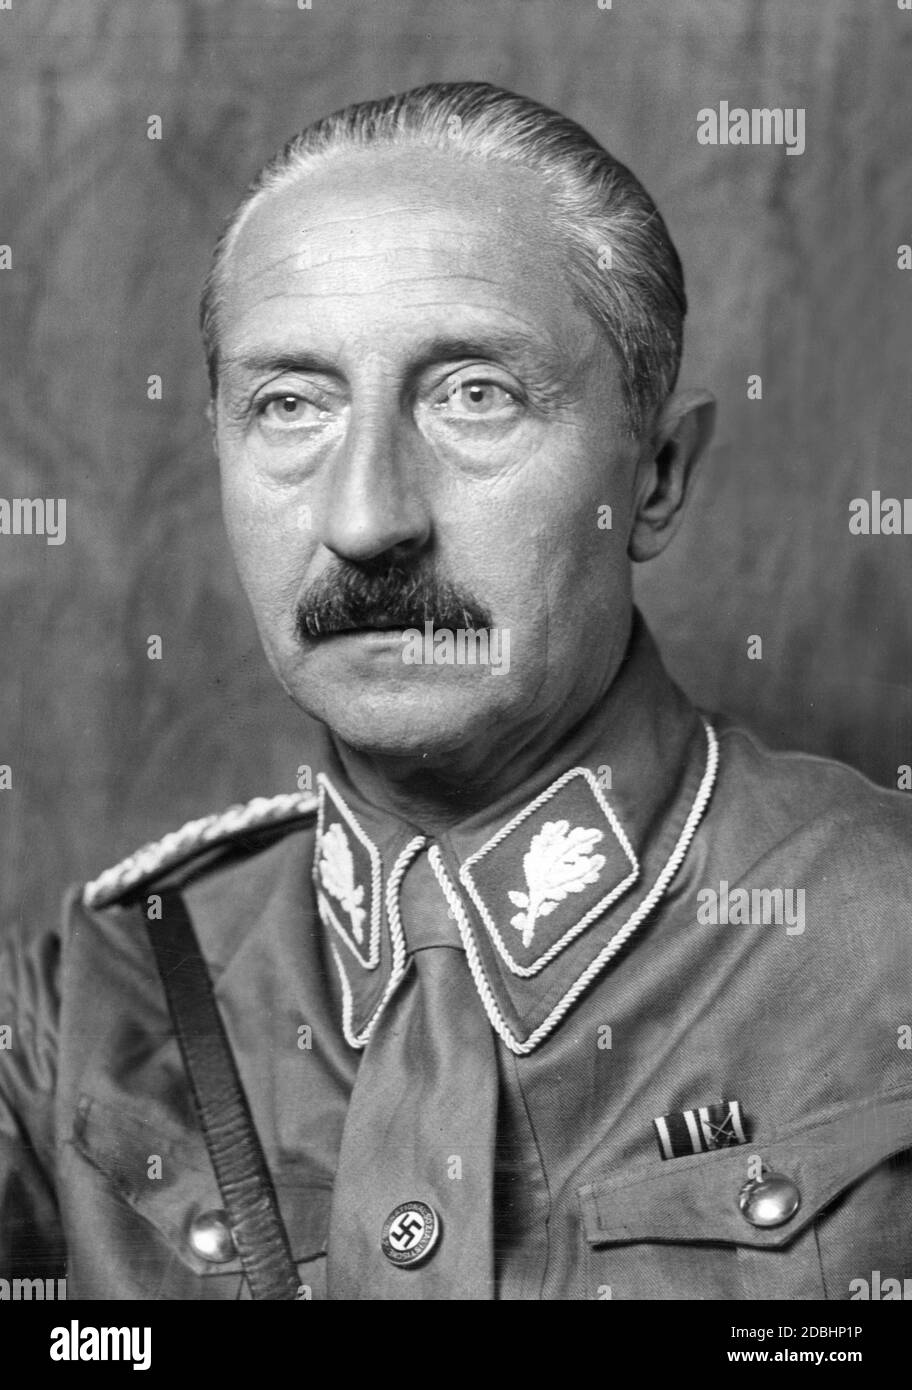 Il principe August Wilhelm di Prussia in uniforme di un leader del gruppo SA con insegne e un distintivo di partito della NSDAP. L'immagine lo mostra all'età di 50 anni. Foto Stock